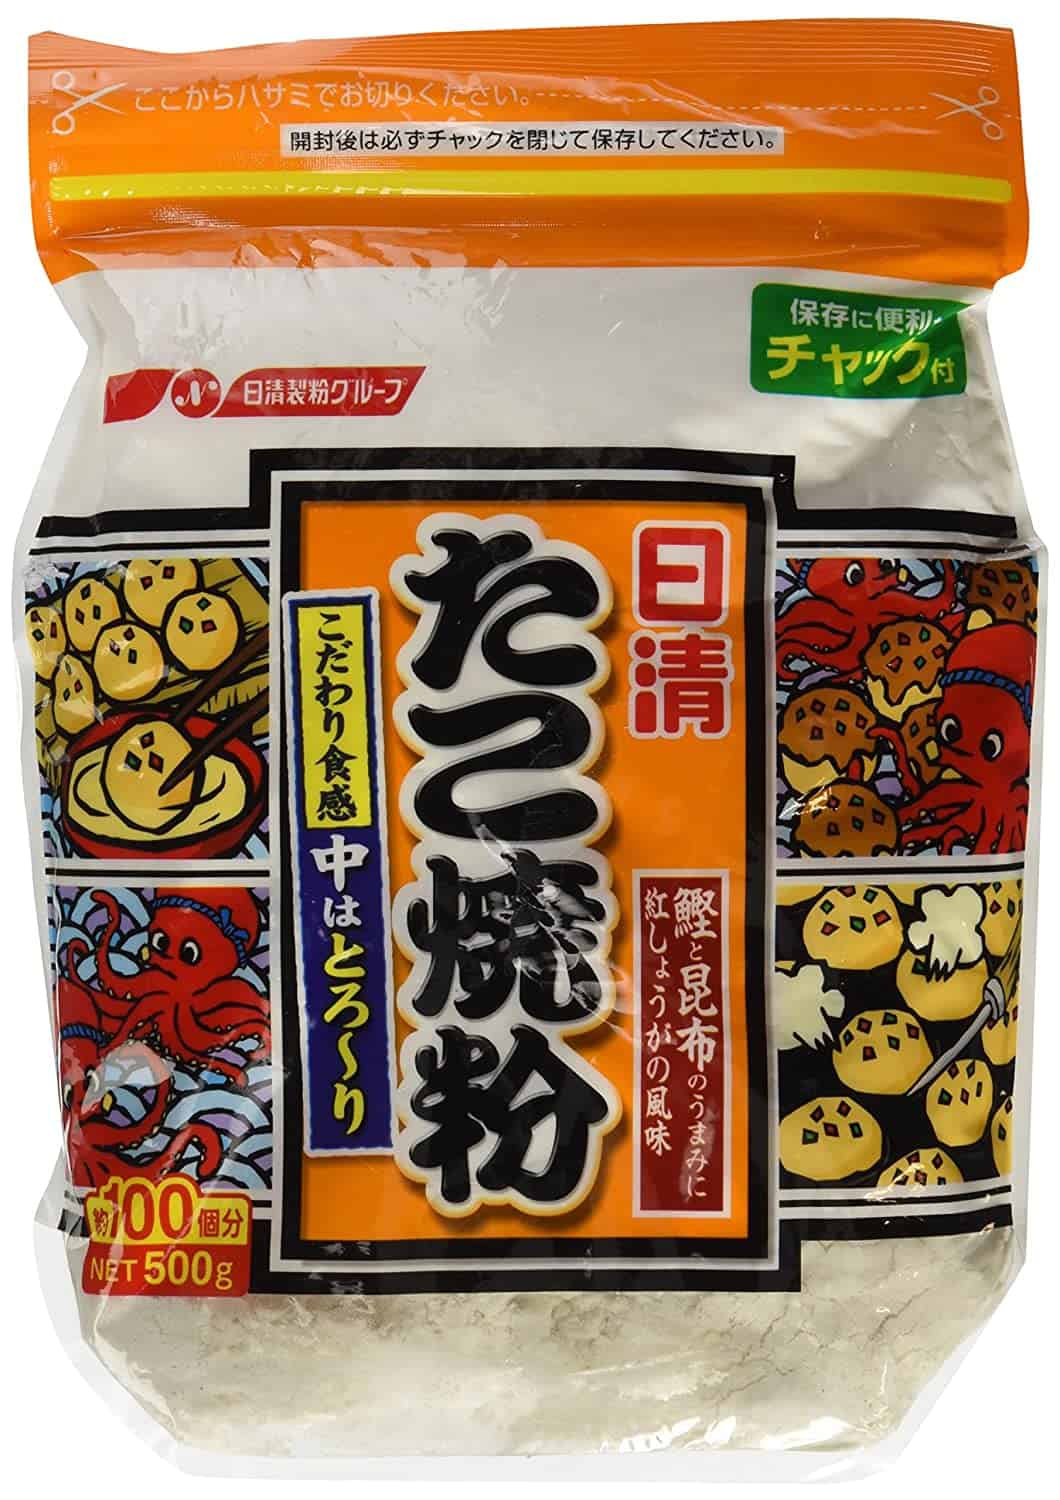 Runner-up takoyaki batter mix- Nissin Takoyaki Powder 500g